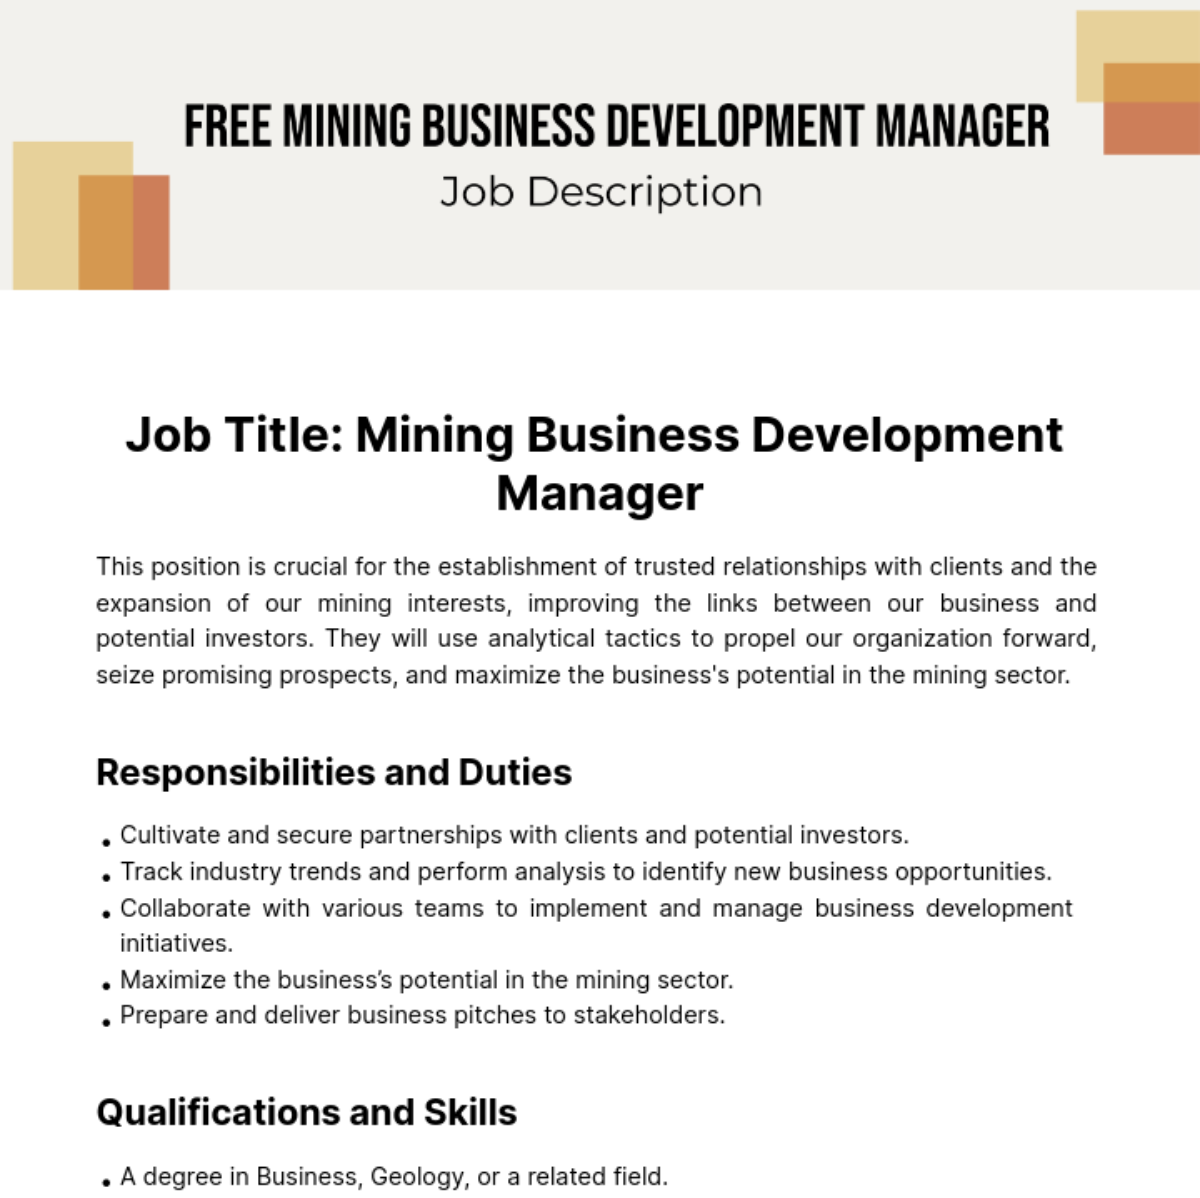 Free Mining Business Development Manager Job Description Template